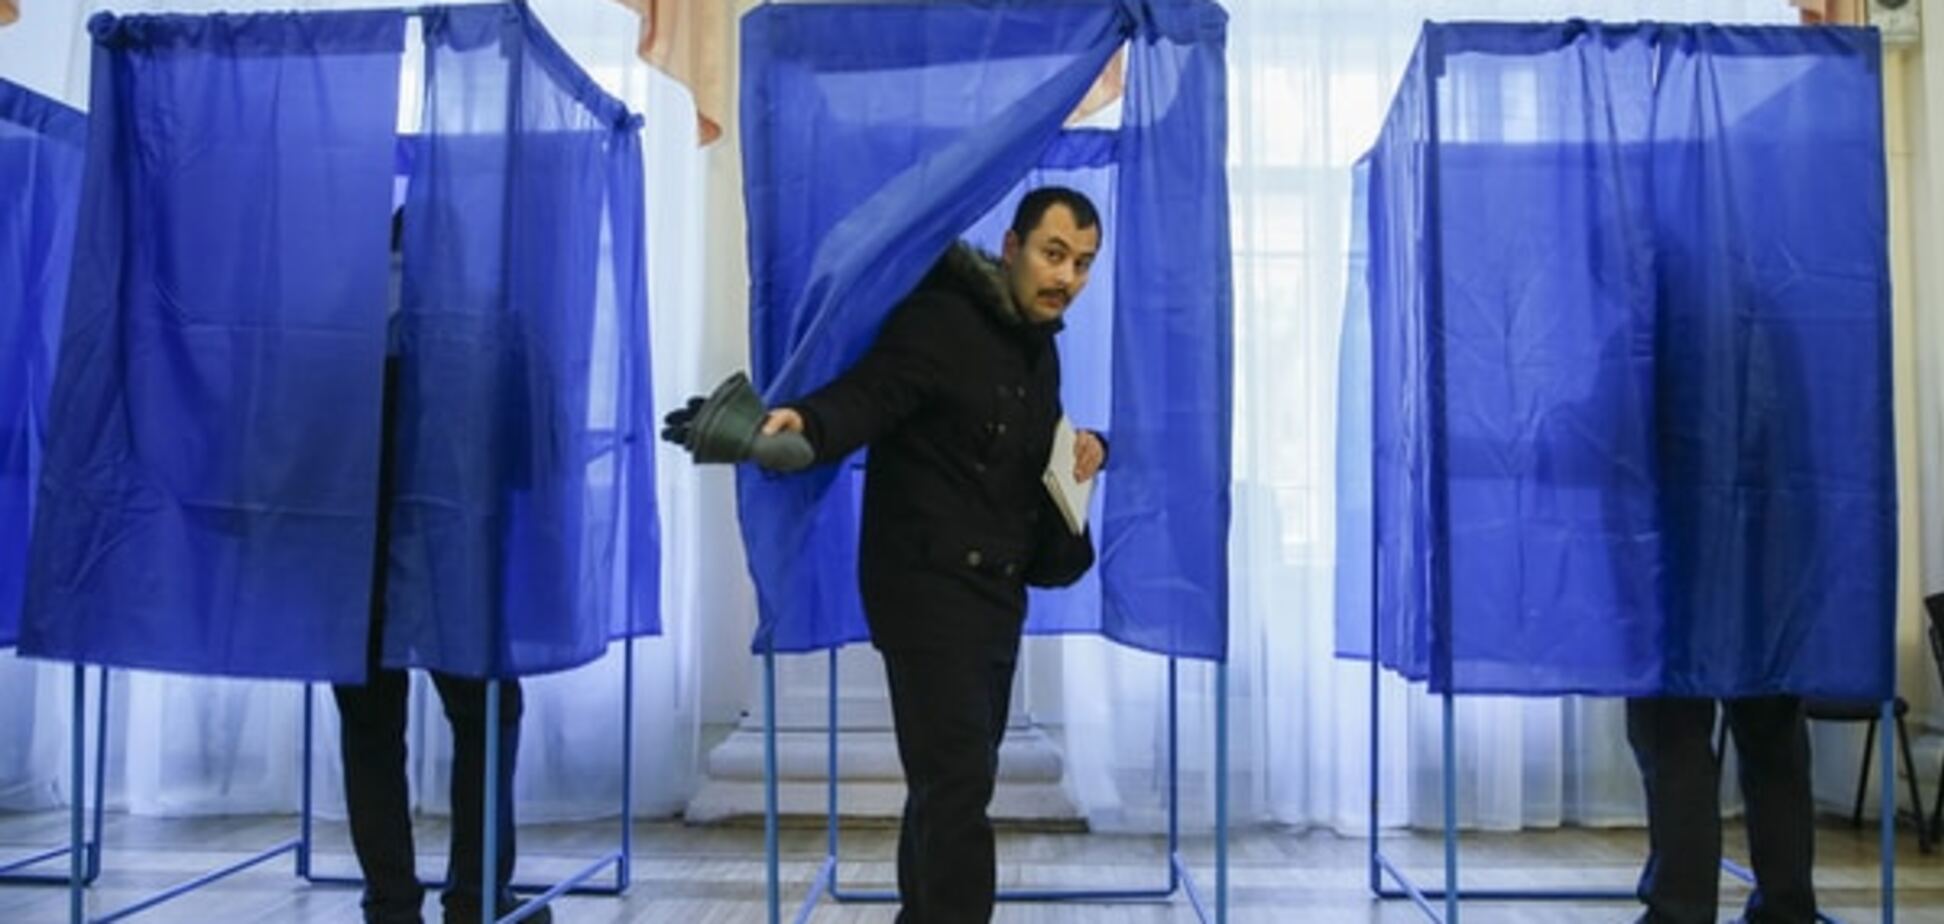 Следующие выборы в Украине предложили провести в электронном формате 